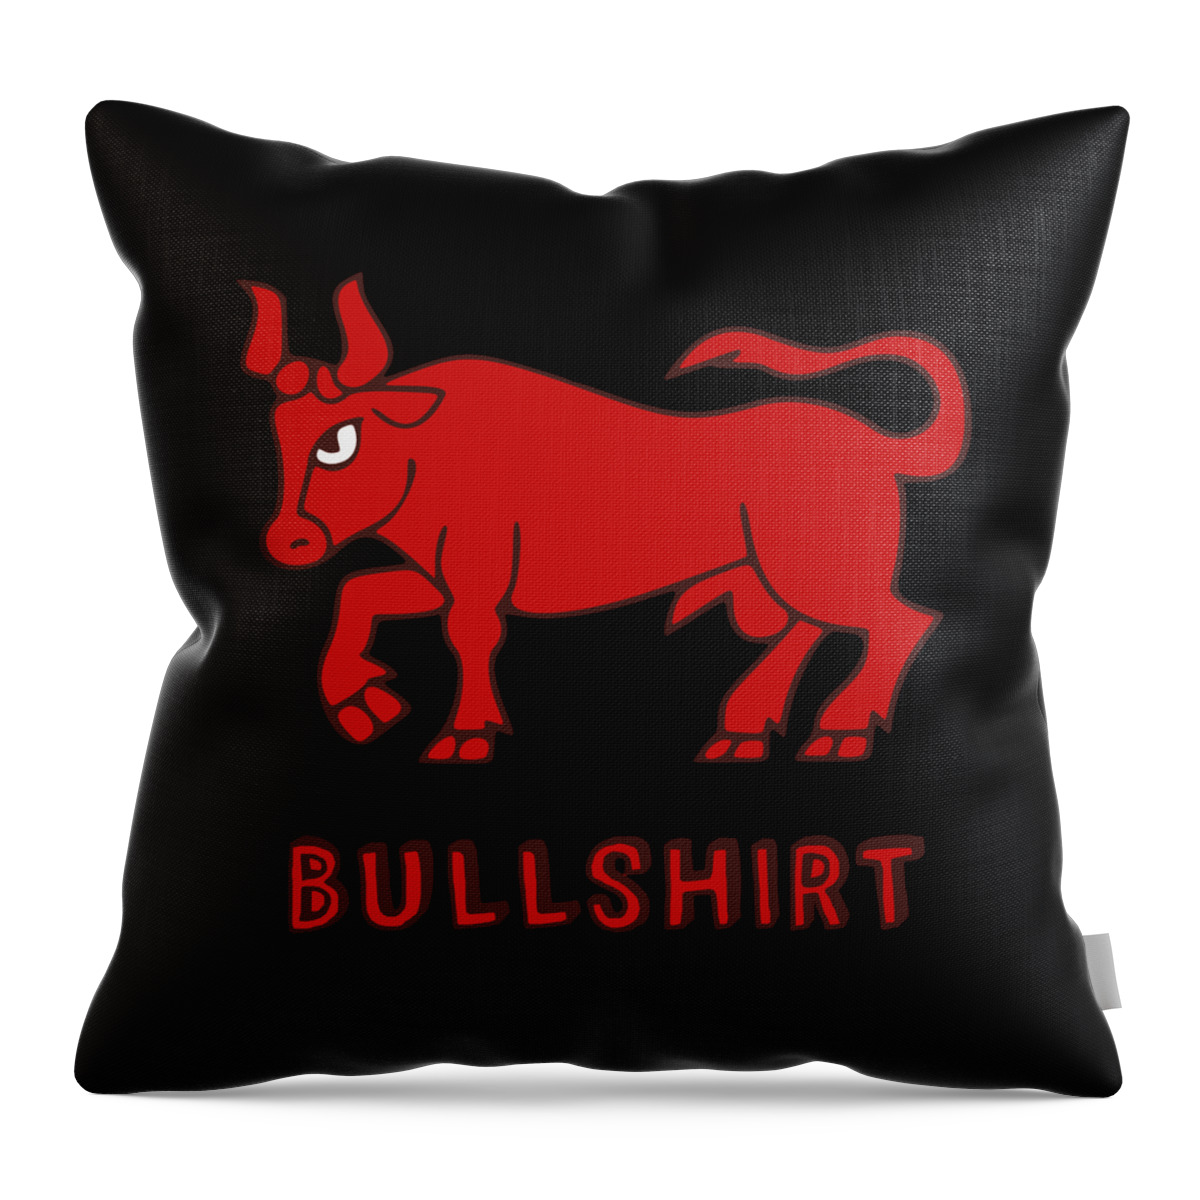 Farmer Throw Pillow featuring the digital art Bullshirt by Flippin Sweet Gear